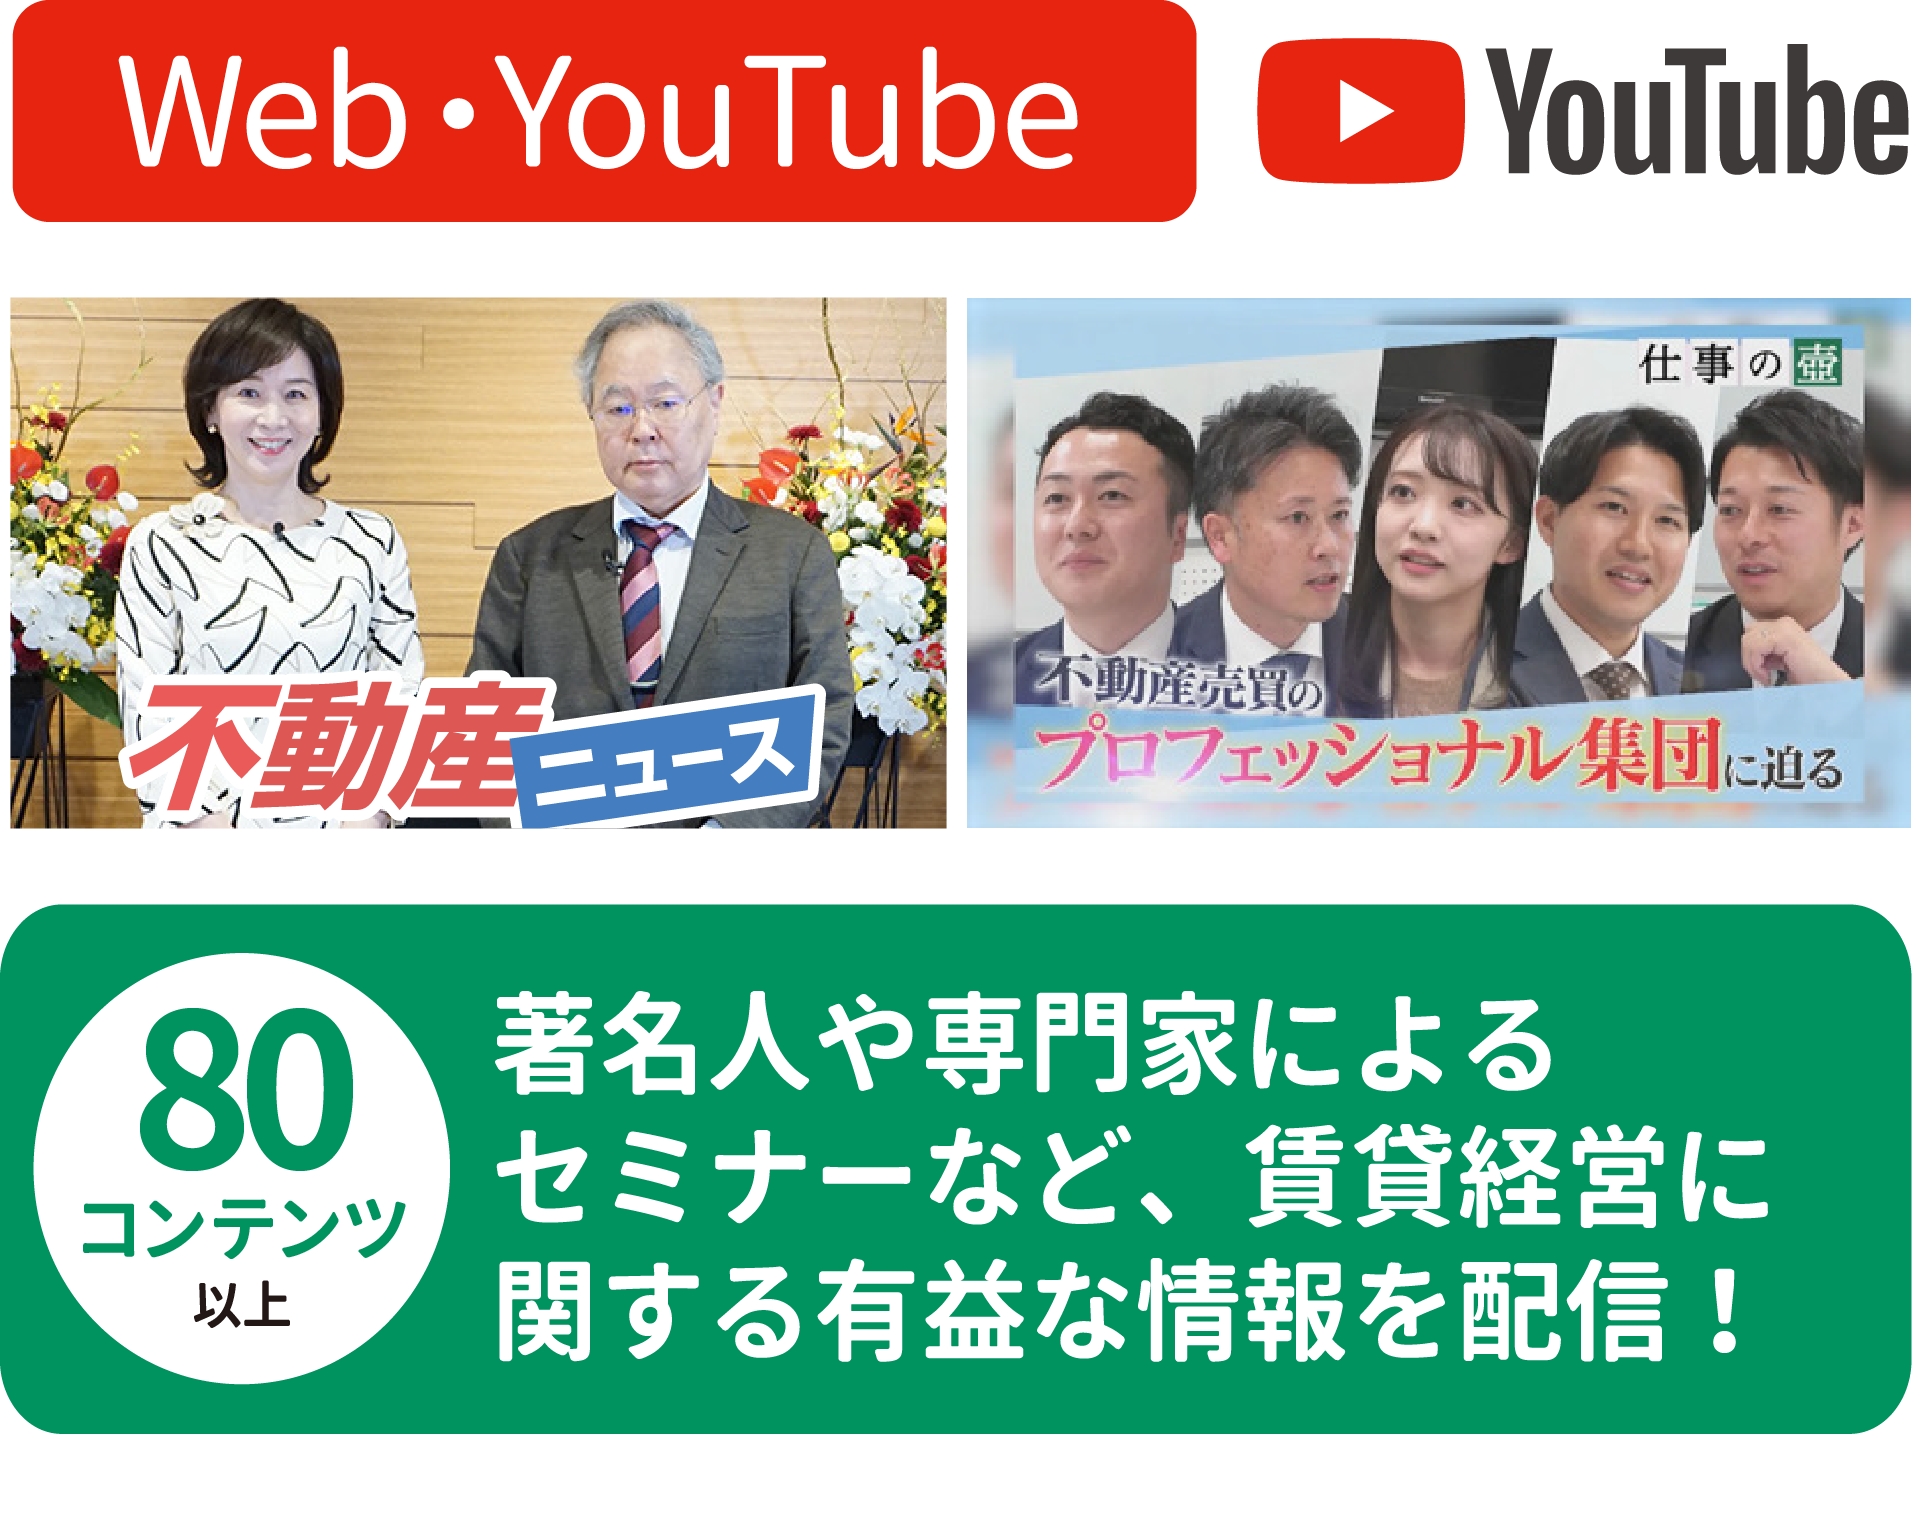 エイブルオンラインフェスタ_WEB・Youtube1